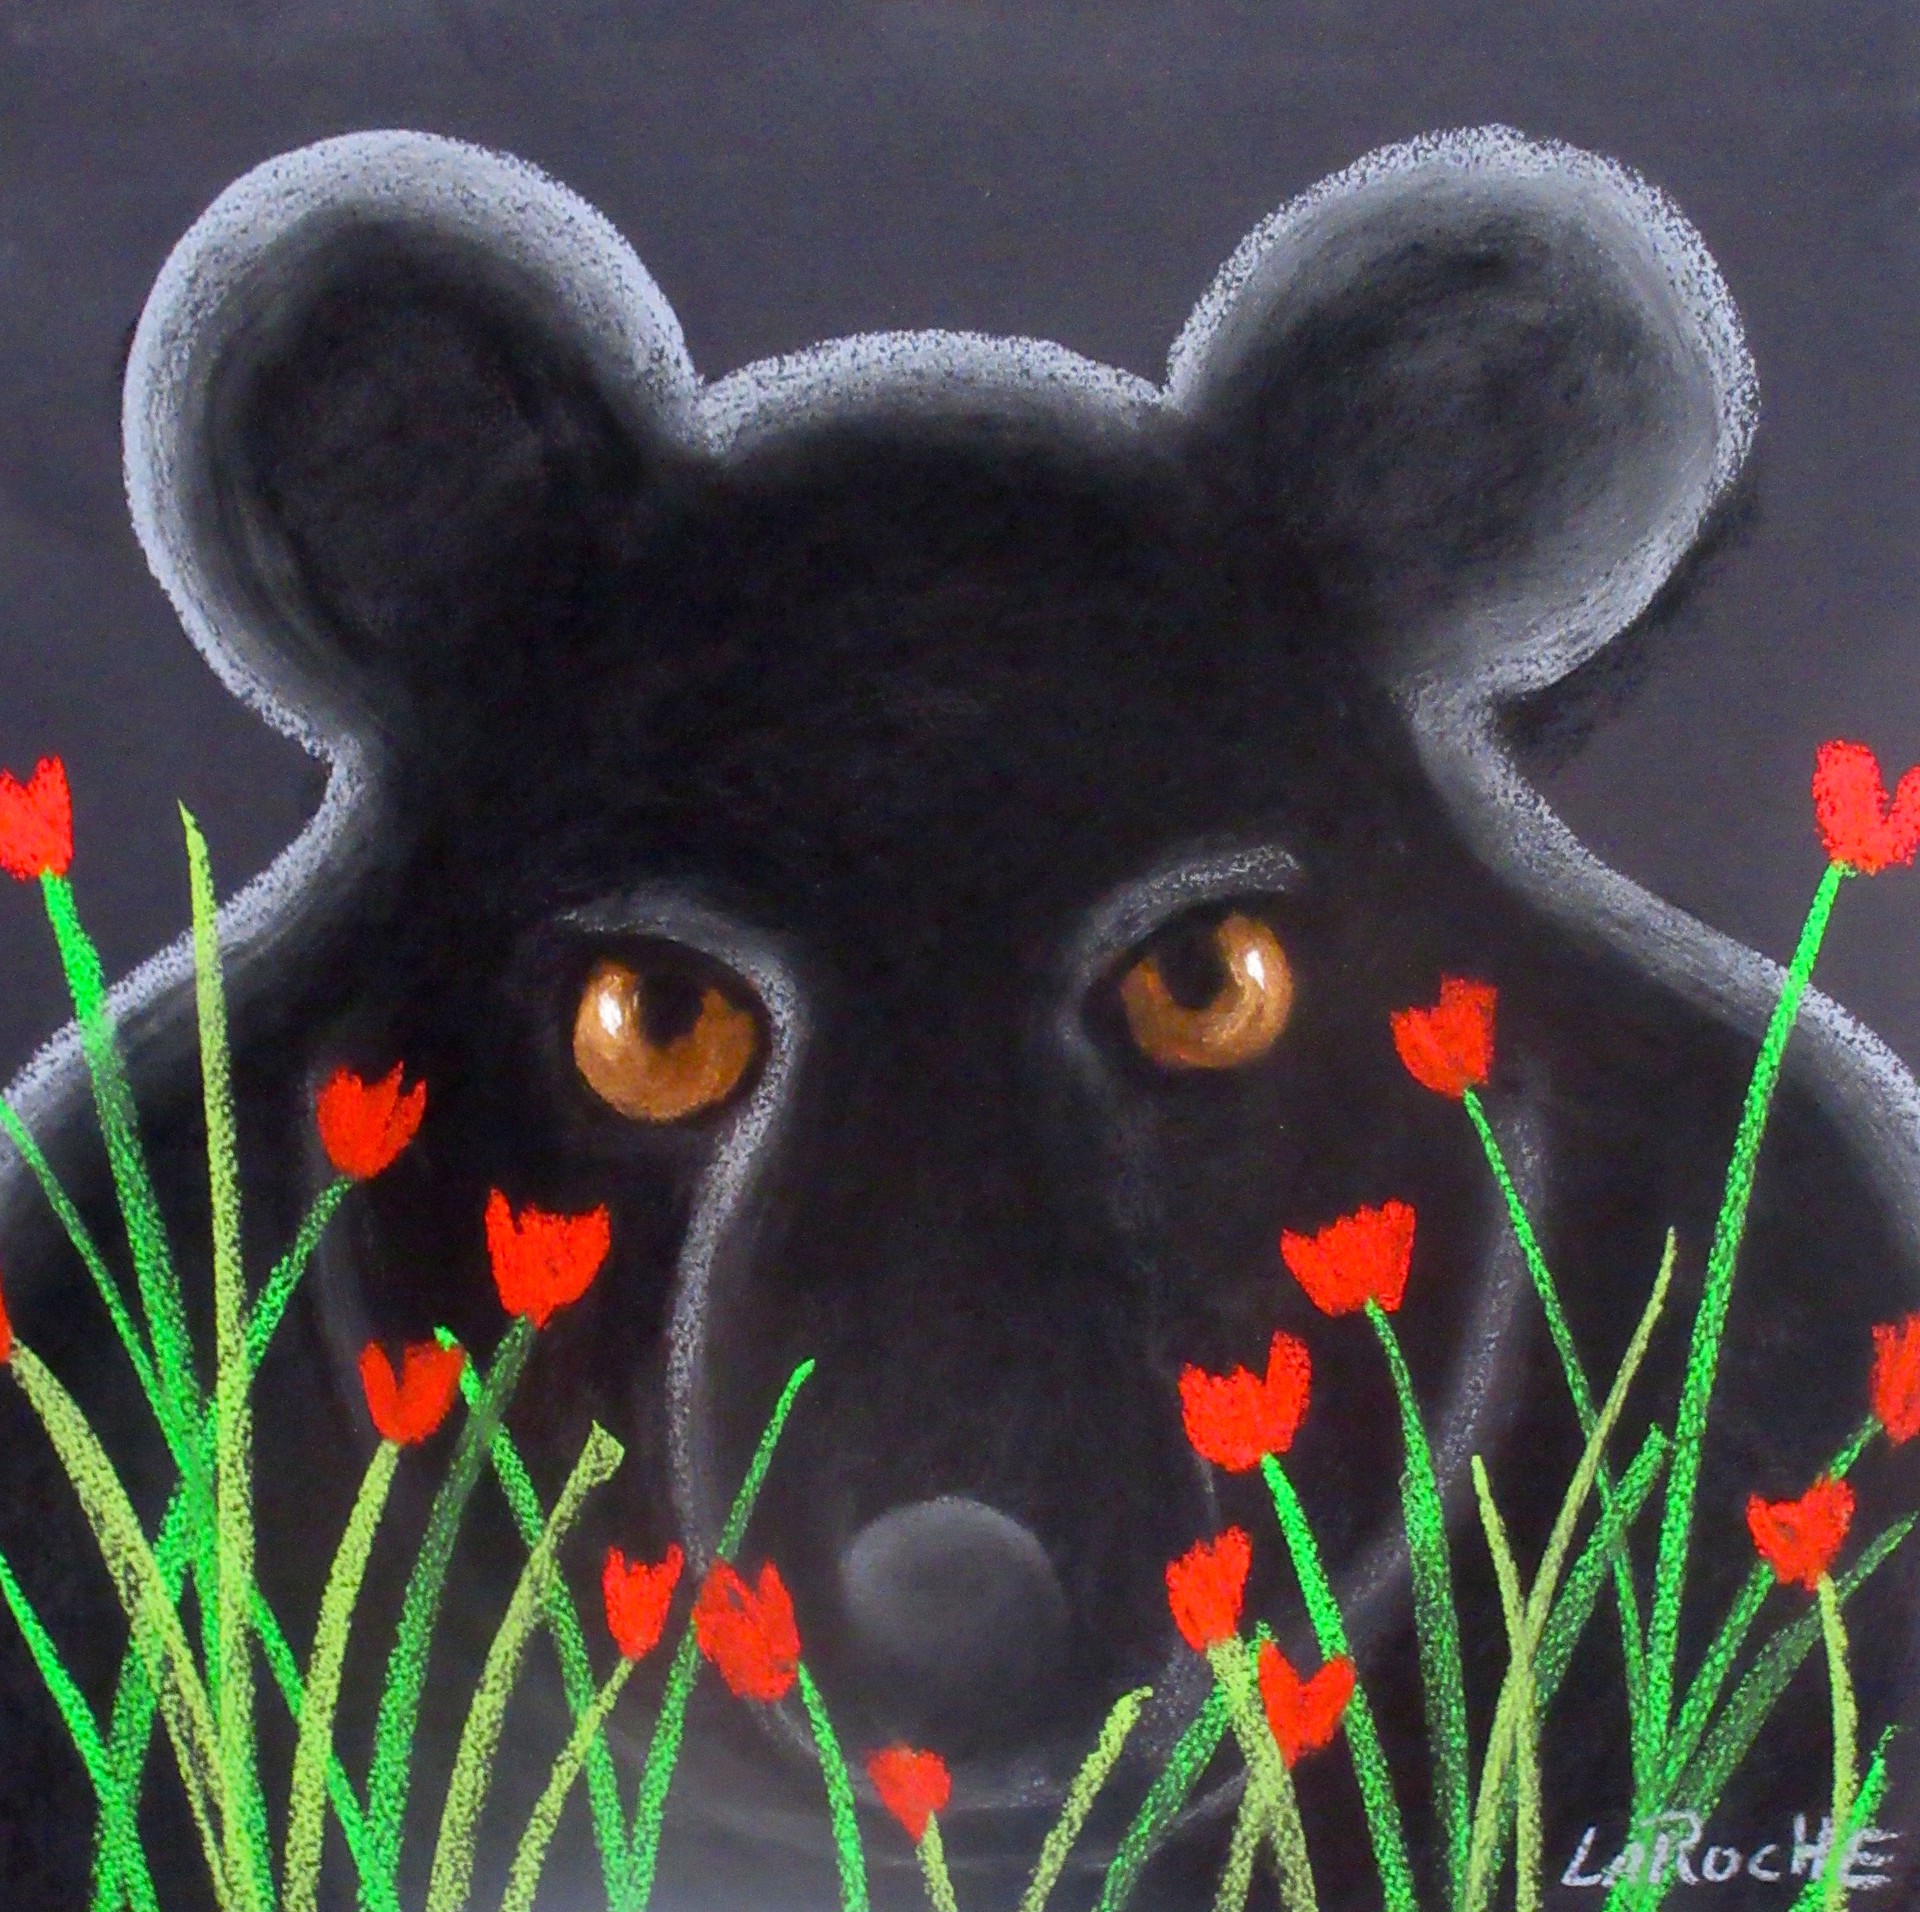 Black Bear in Poppies by Carole LaRoche